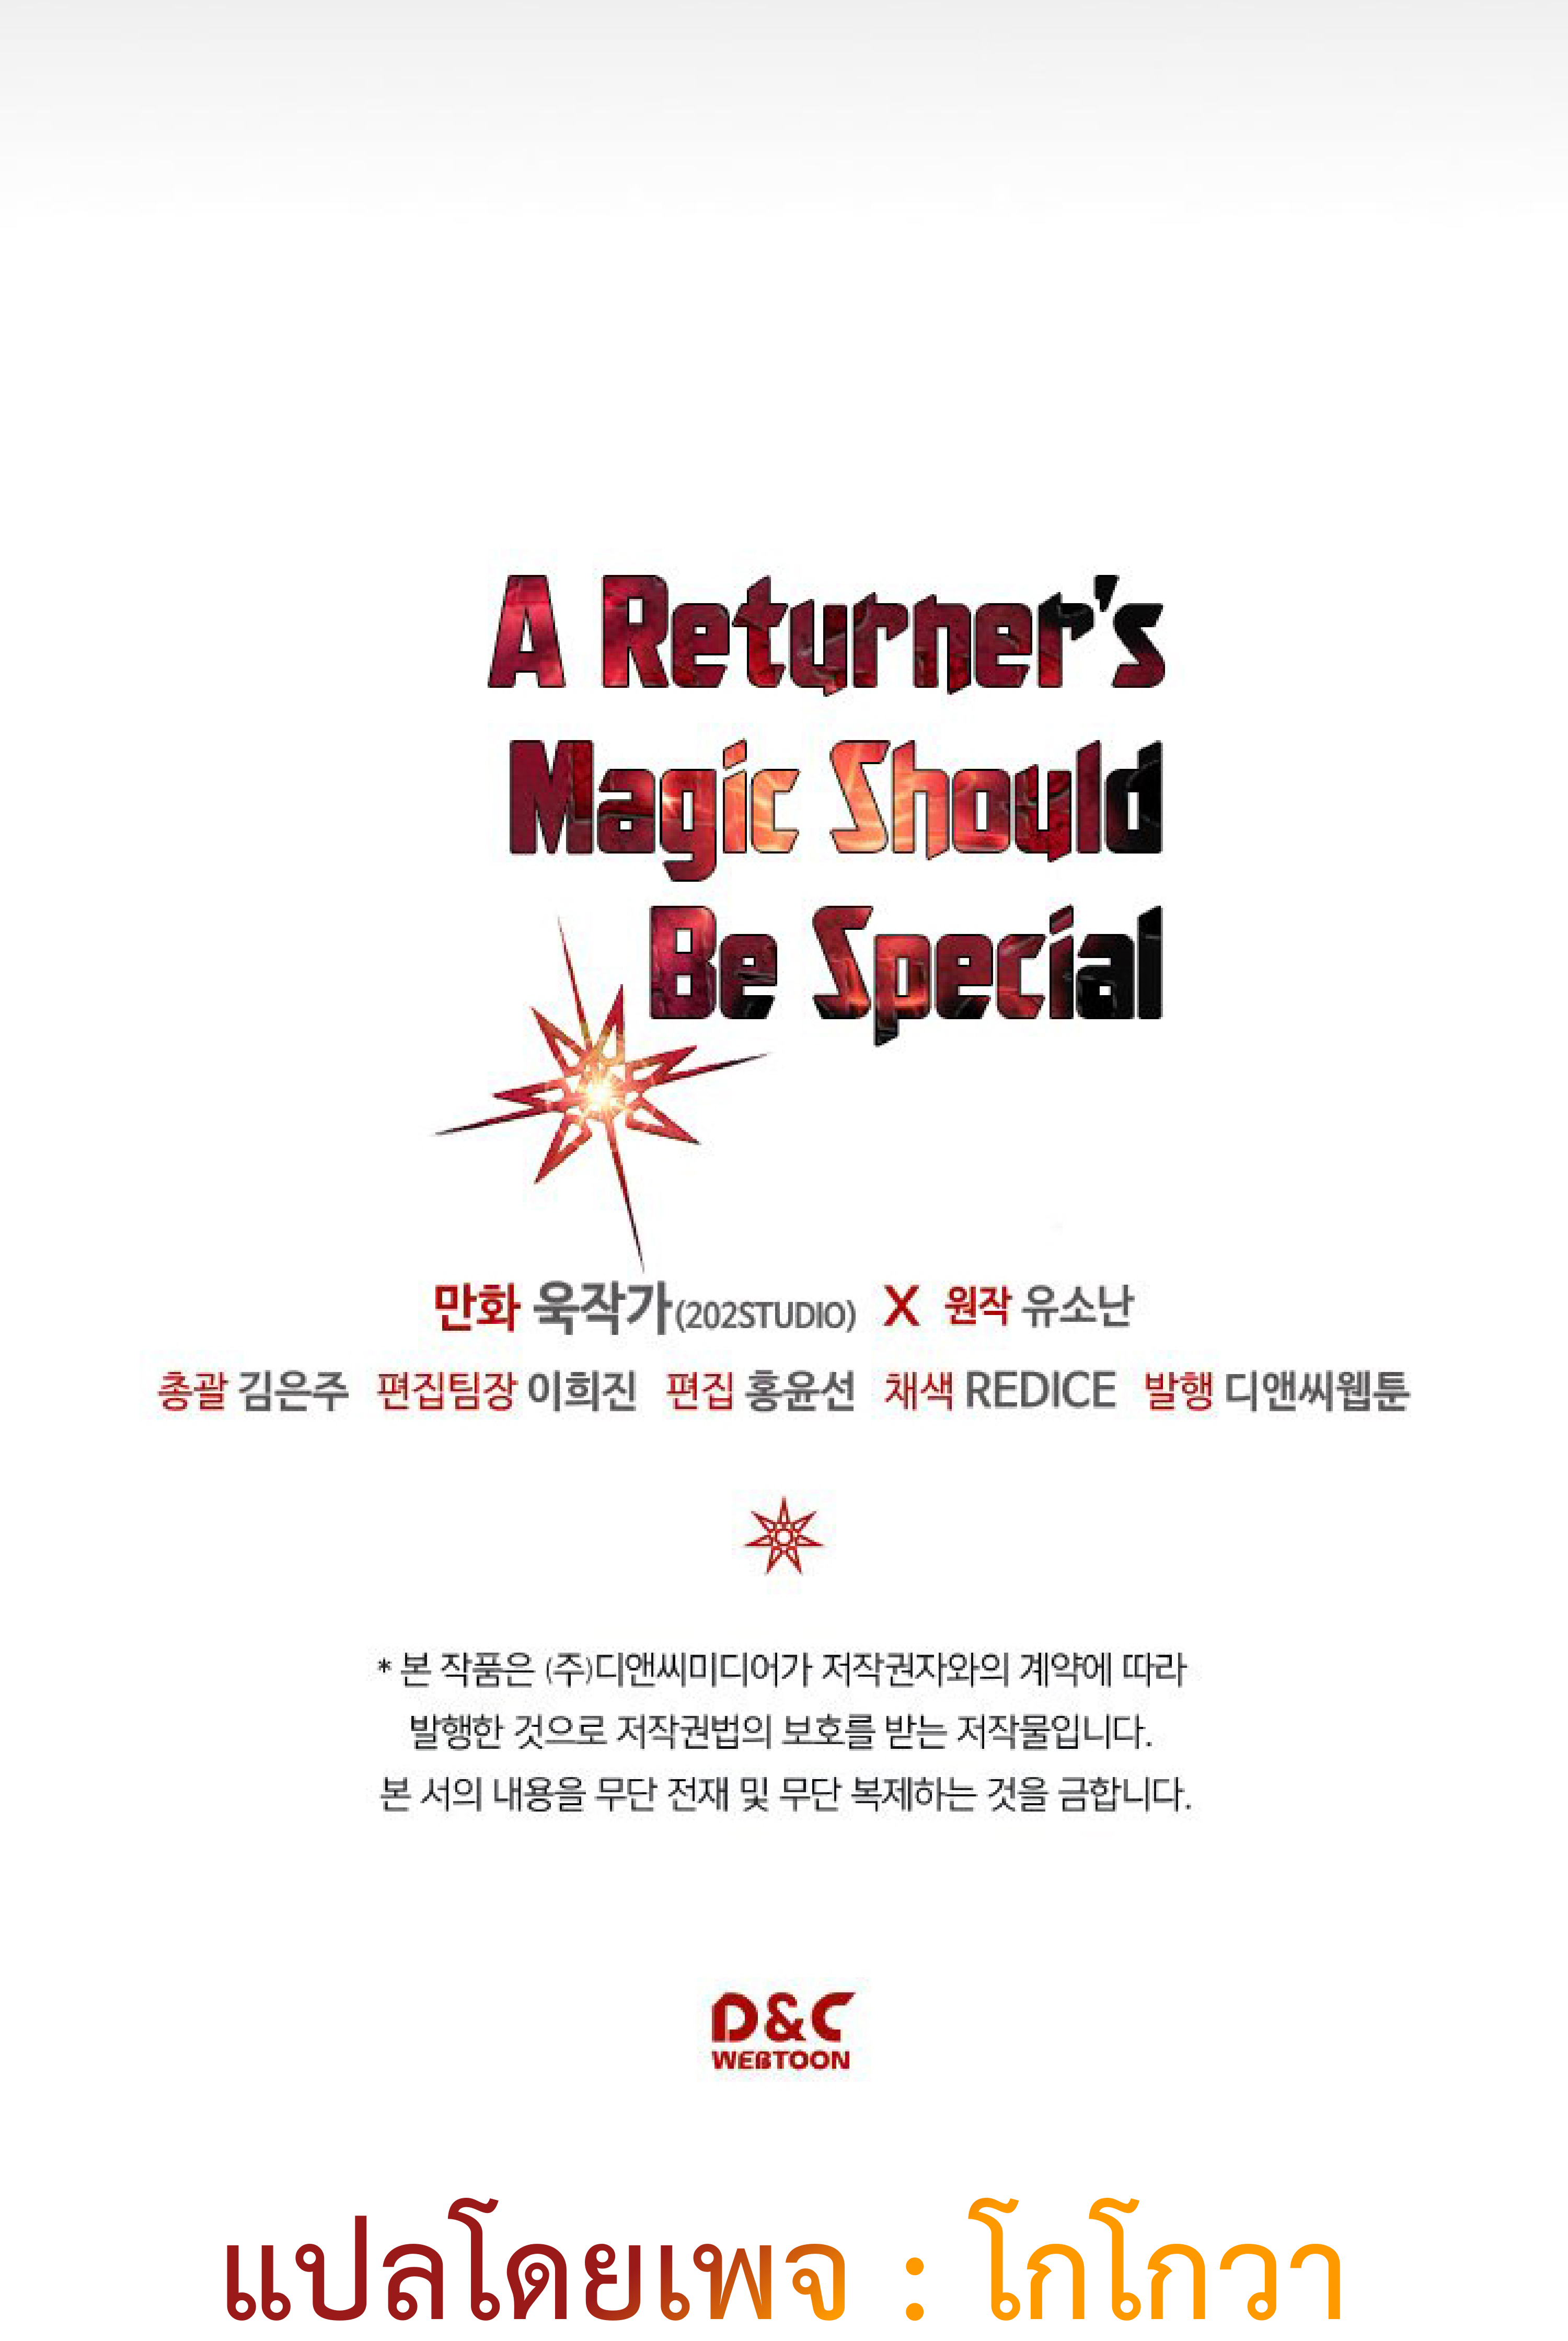 A Returner’s Magic Should Be Special 115 71